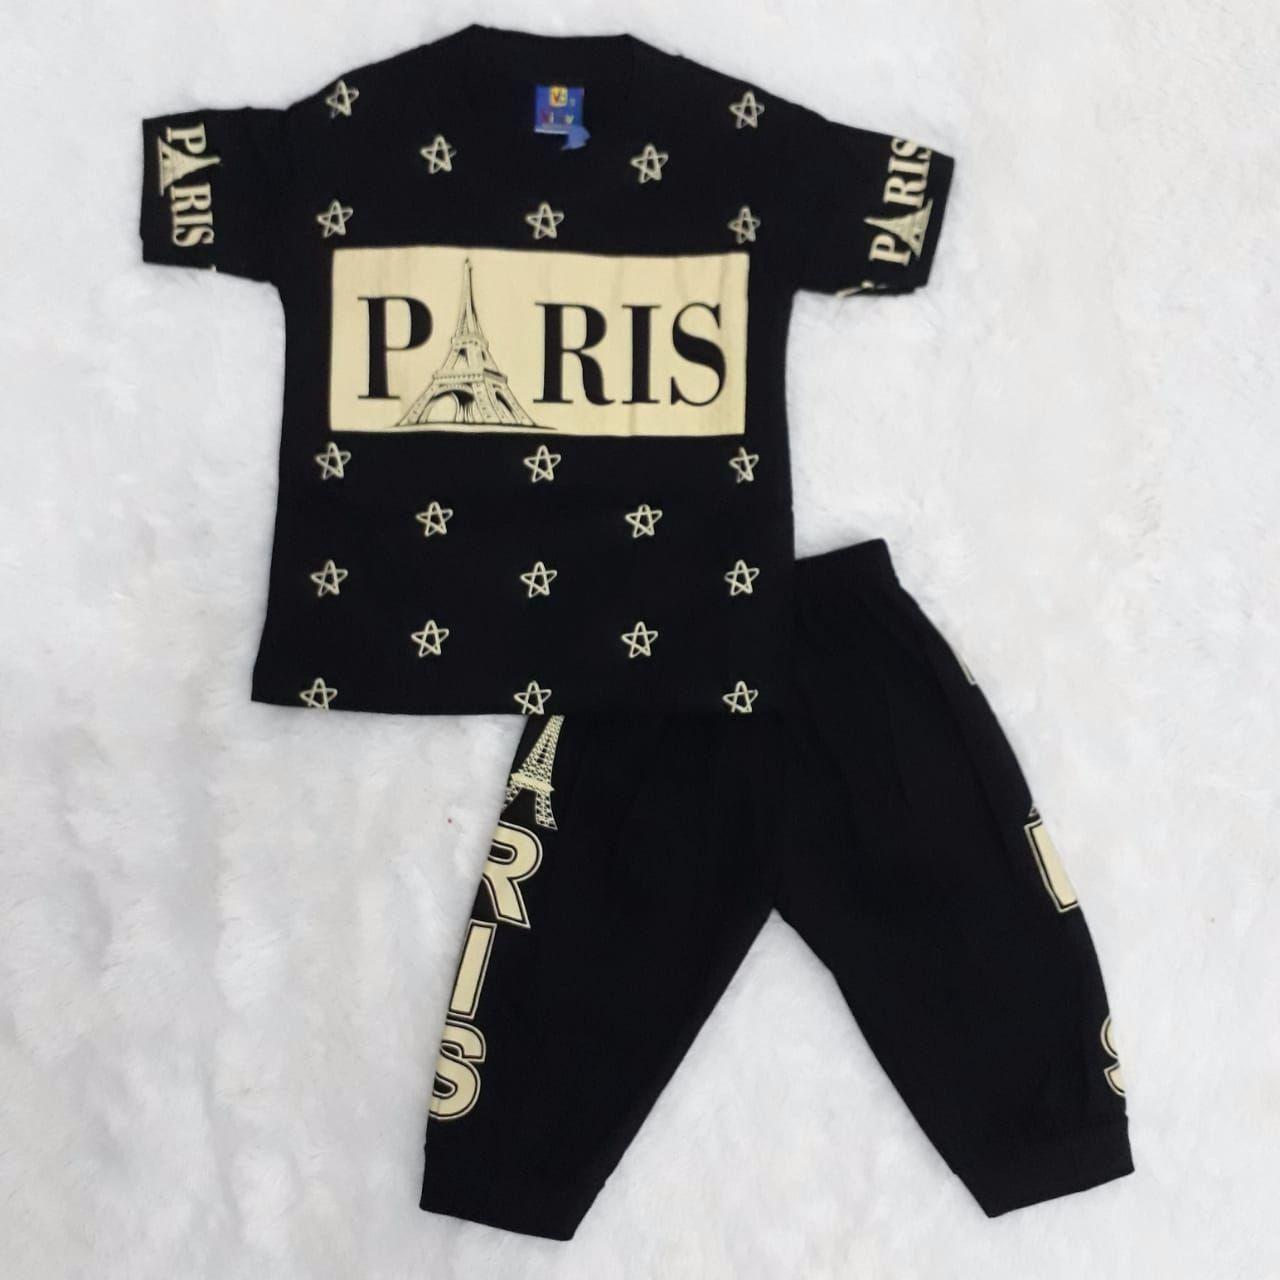 Jual Set Pakaian Bayi Laki Laki Terbaik Lazada